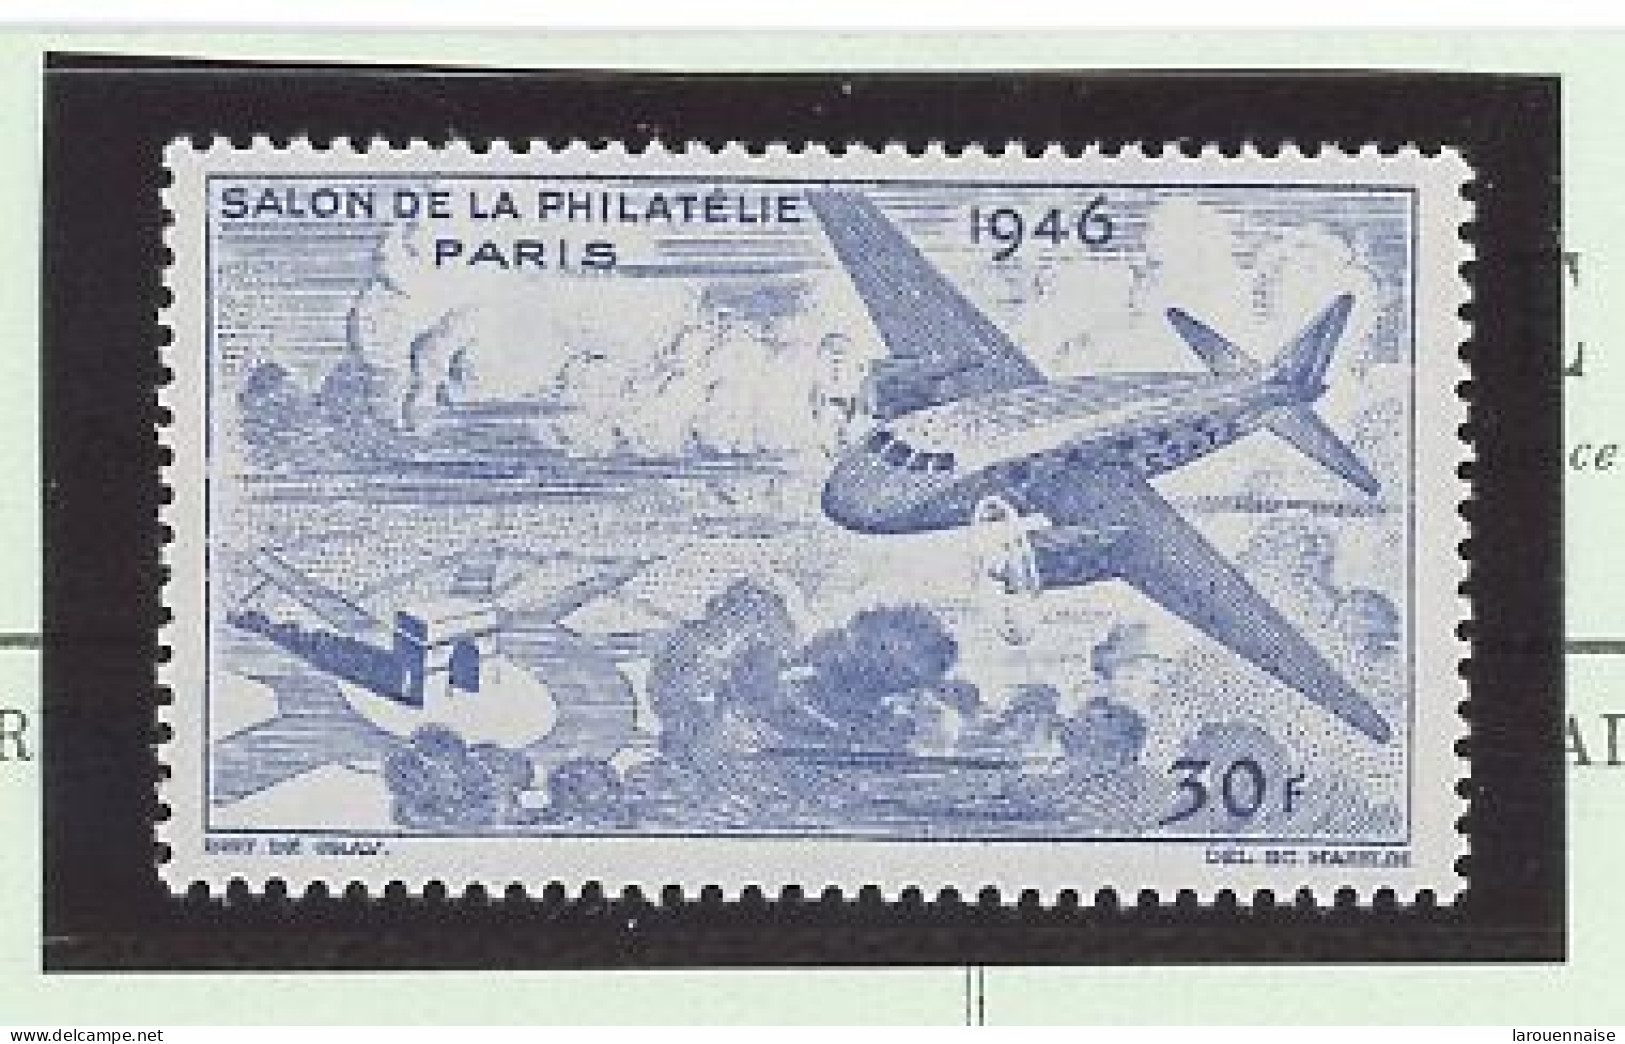 VIGNETTE -1946 - SALON PHILATELIQUE DE PARIS -N*- - Briefmarkenmessen